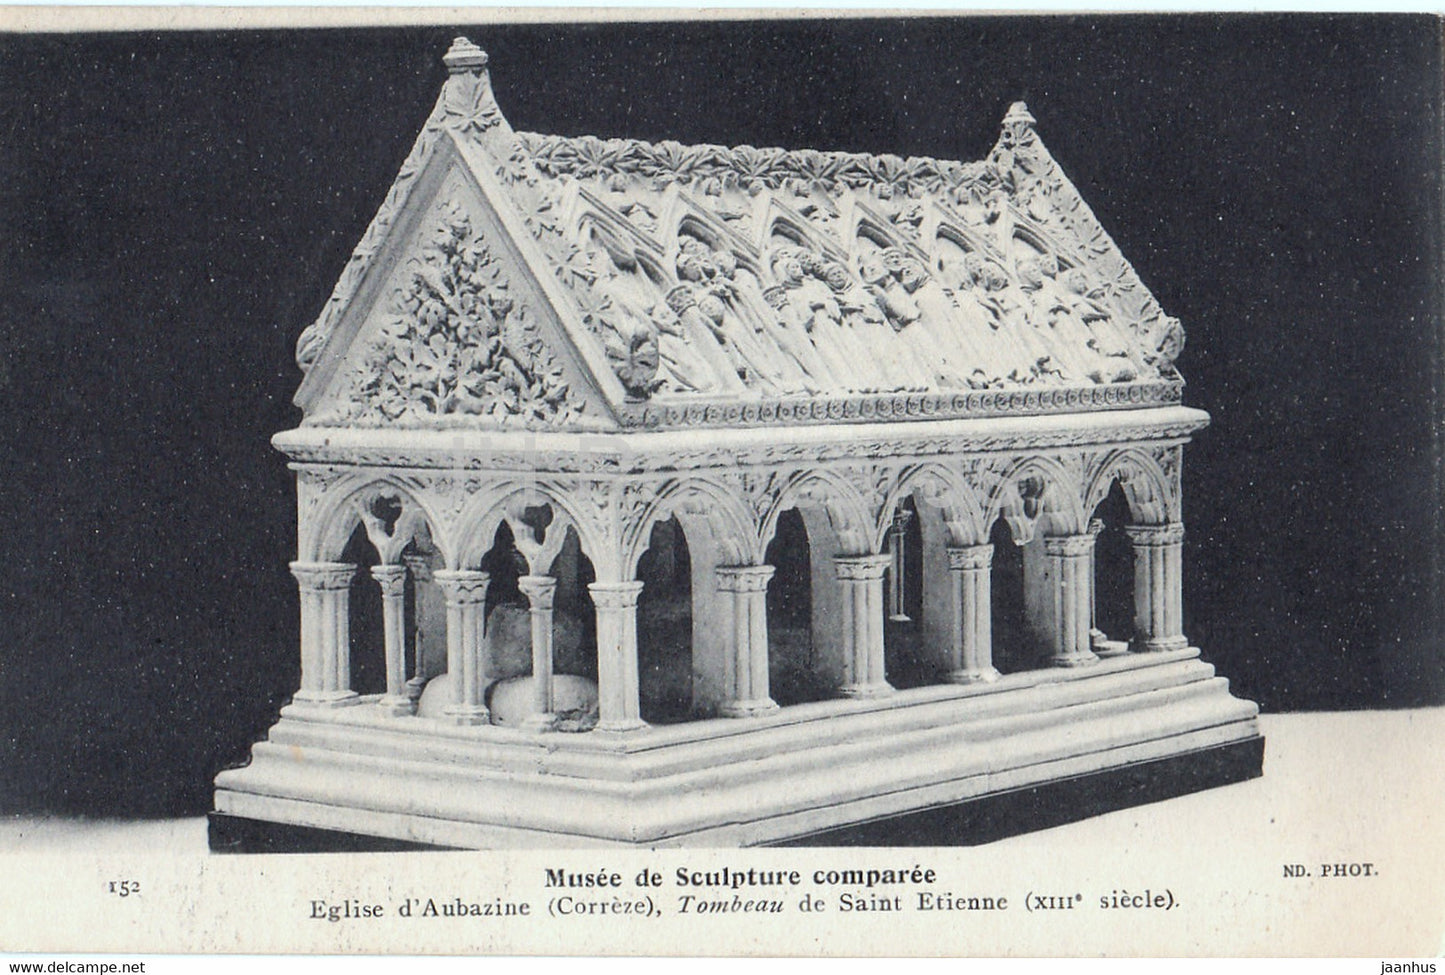 Musee de Sculpture comparee - Eglise d'Aubazine - Tombeau de Saint Etienne - 152 - old postcard - France - unused - JH Postcards